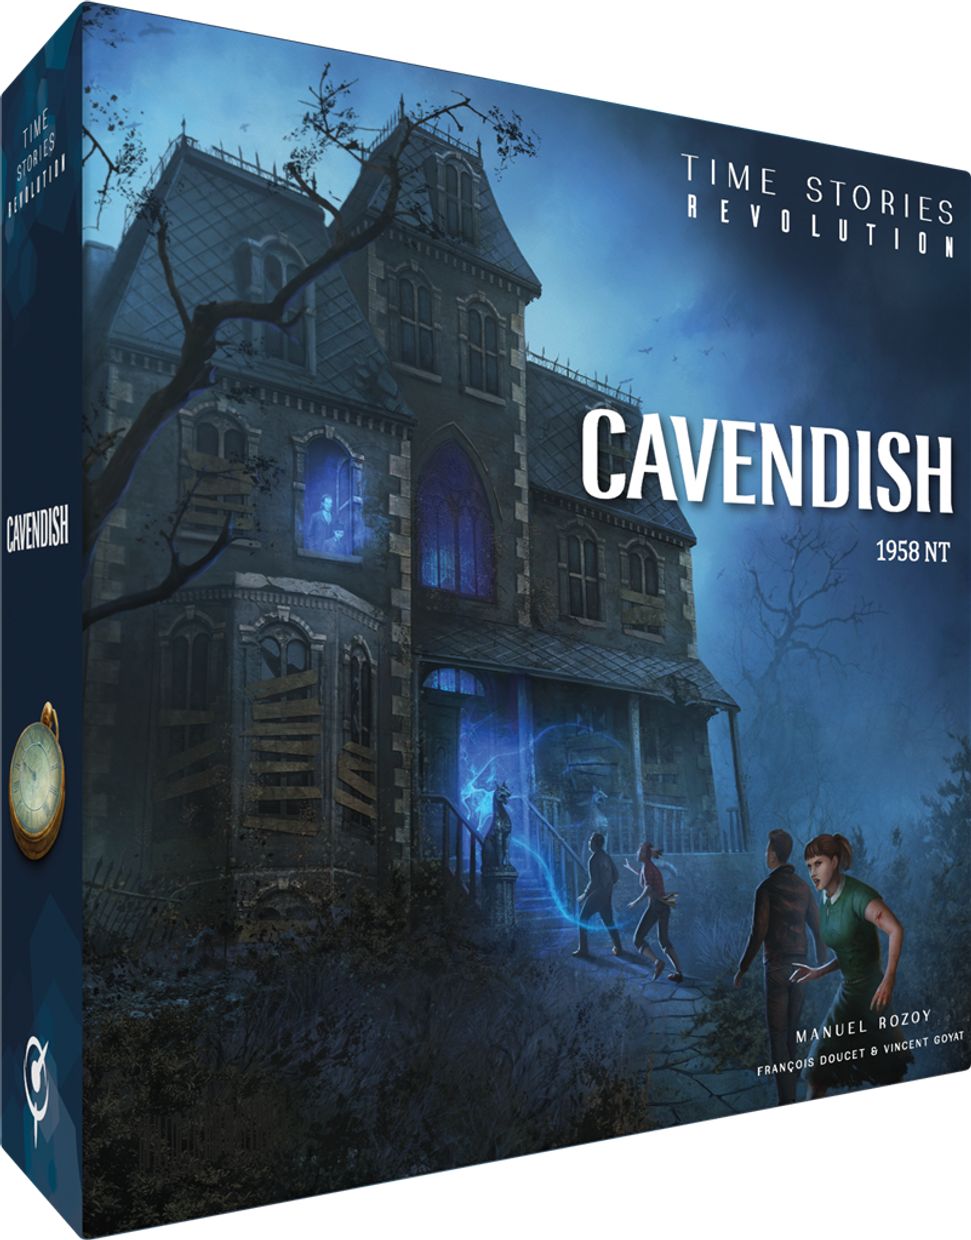 T.I.M.E. Stories Revolution: Cavendish